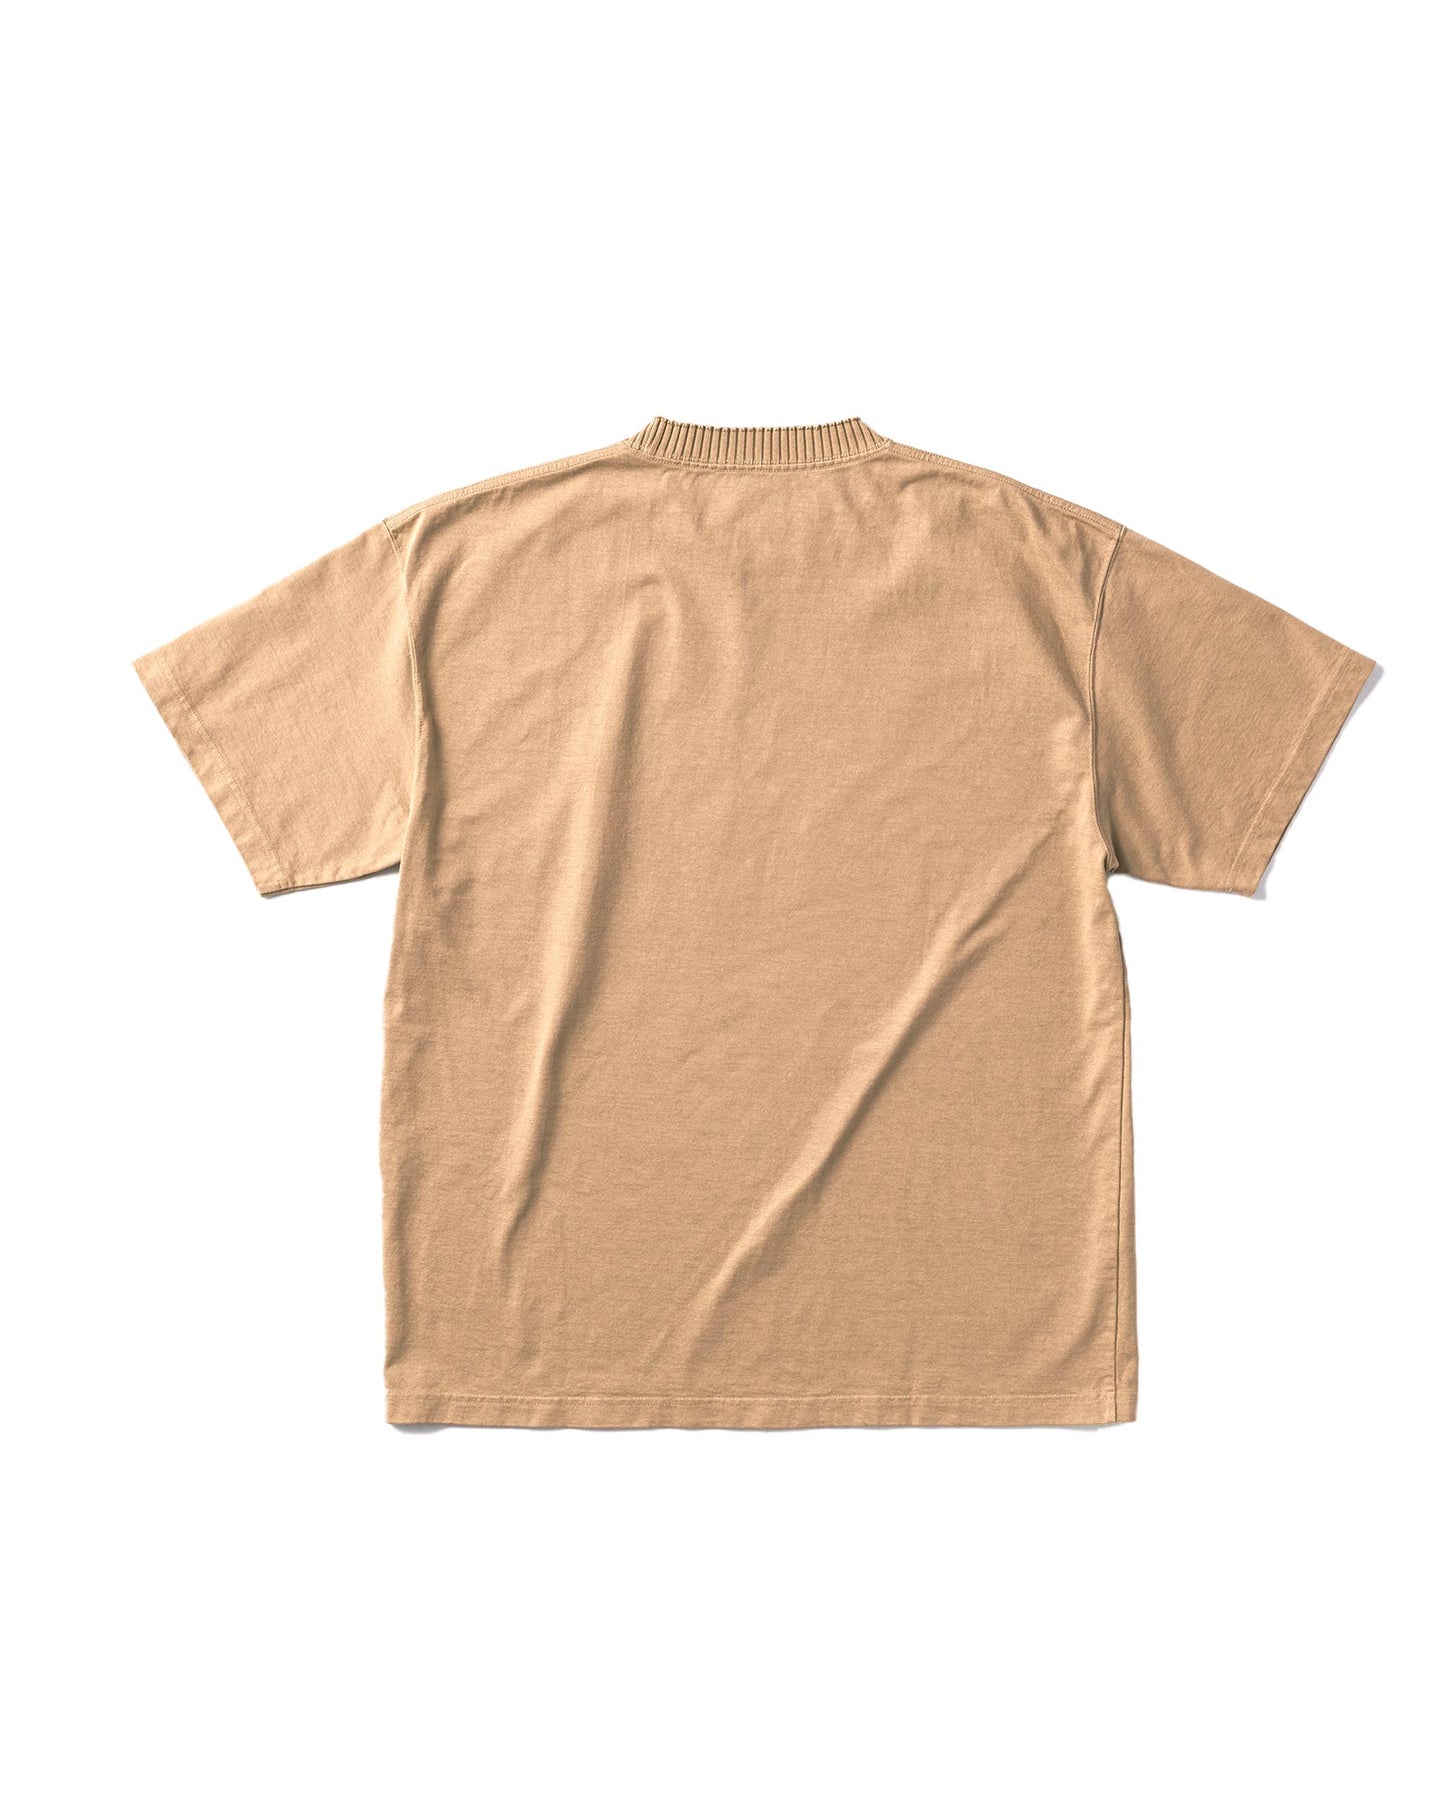 パーフェクトリブス/Basic Short Sleeve T Shirts/Tシャツ/Brown